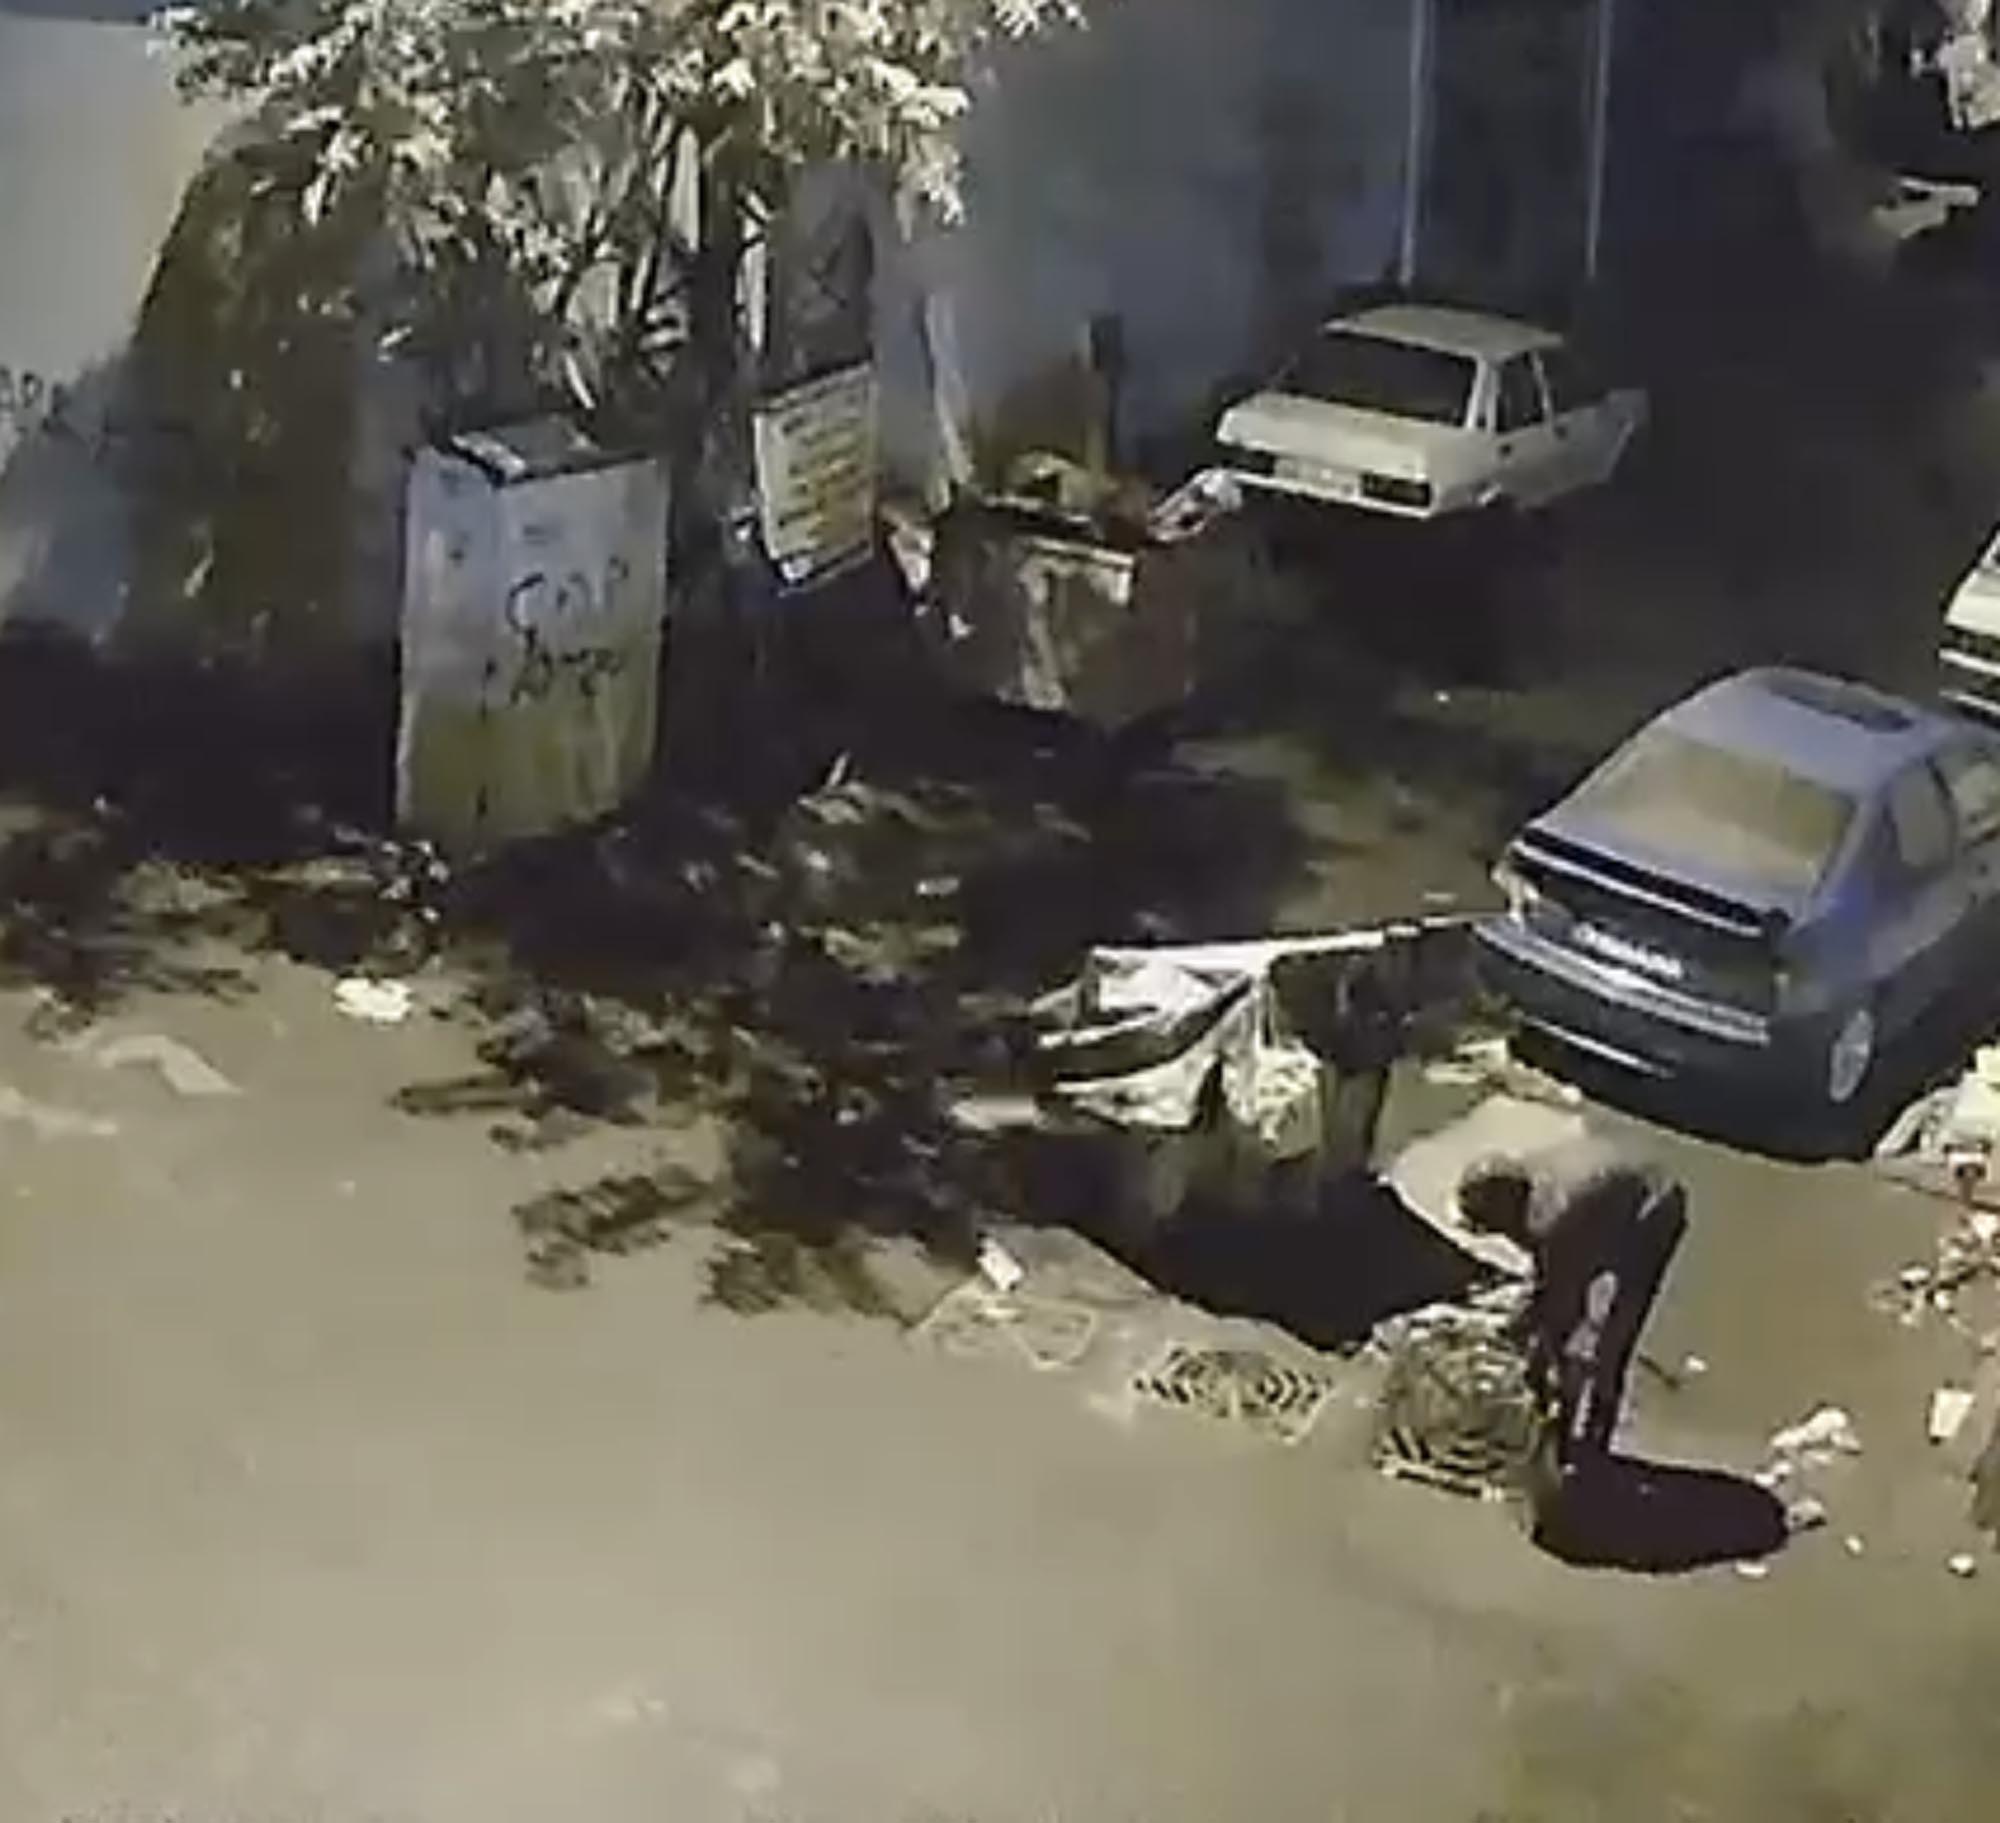 Bir hırsız, zıplayarak yerinden çıkardığı rögar kapağını çalarak olay yerinden kaçtı. Bu anlar güvenlik kamerasına yansıdı.